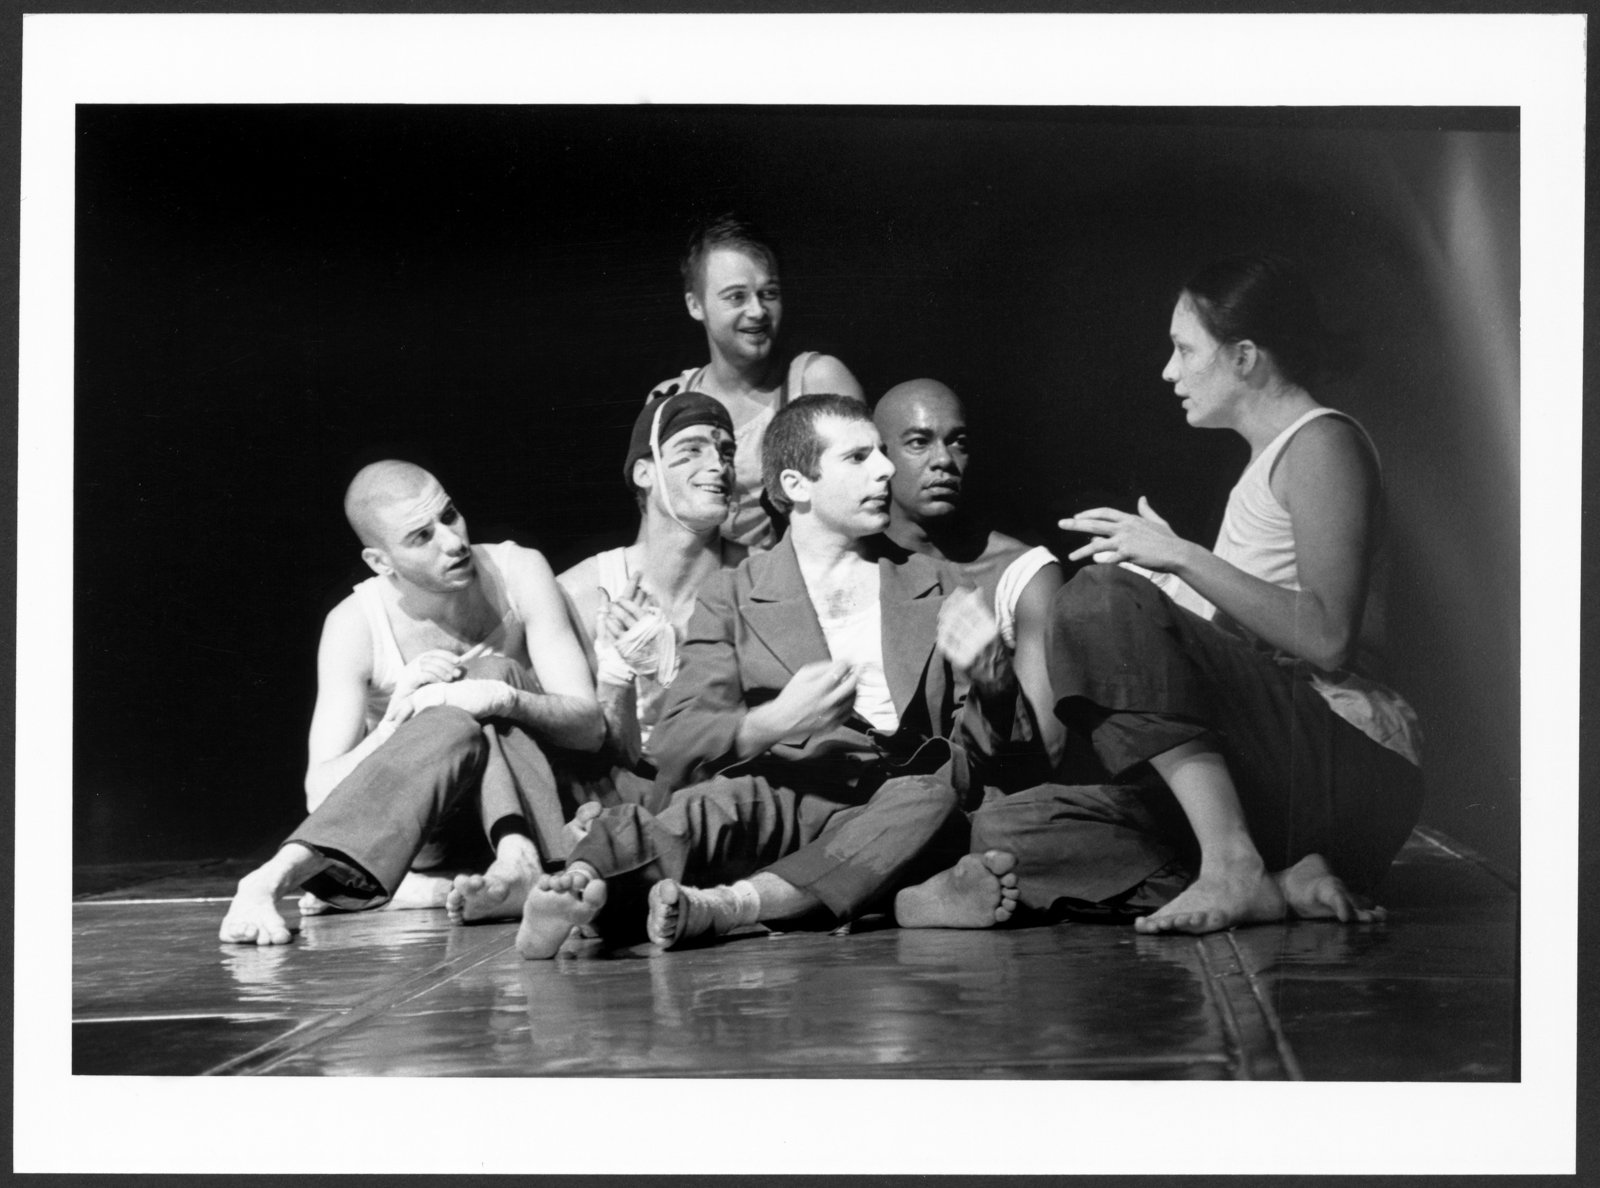 Gruppenbild einer Szene aus "Recherche Faust/Artaud" an der Hochschule für Schauspielkunst (Hochschule für Schauspielkunst Ernst Busch Berlin RR-F)